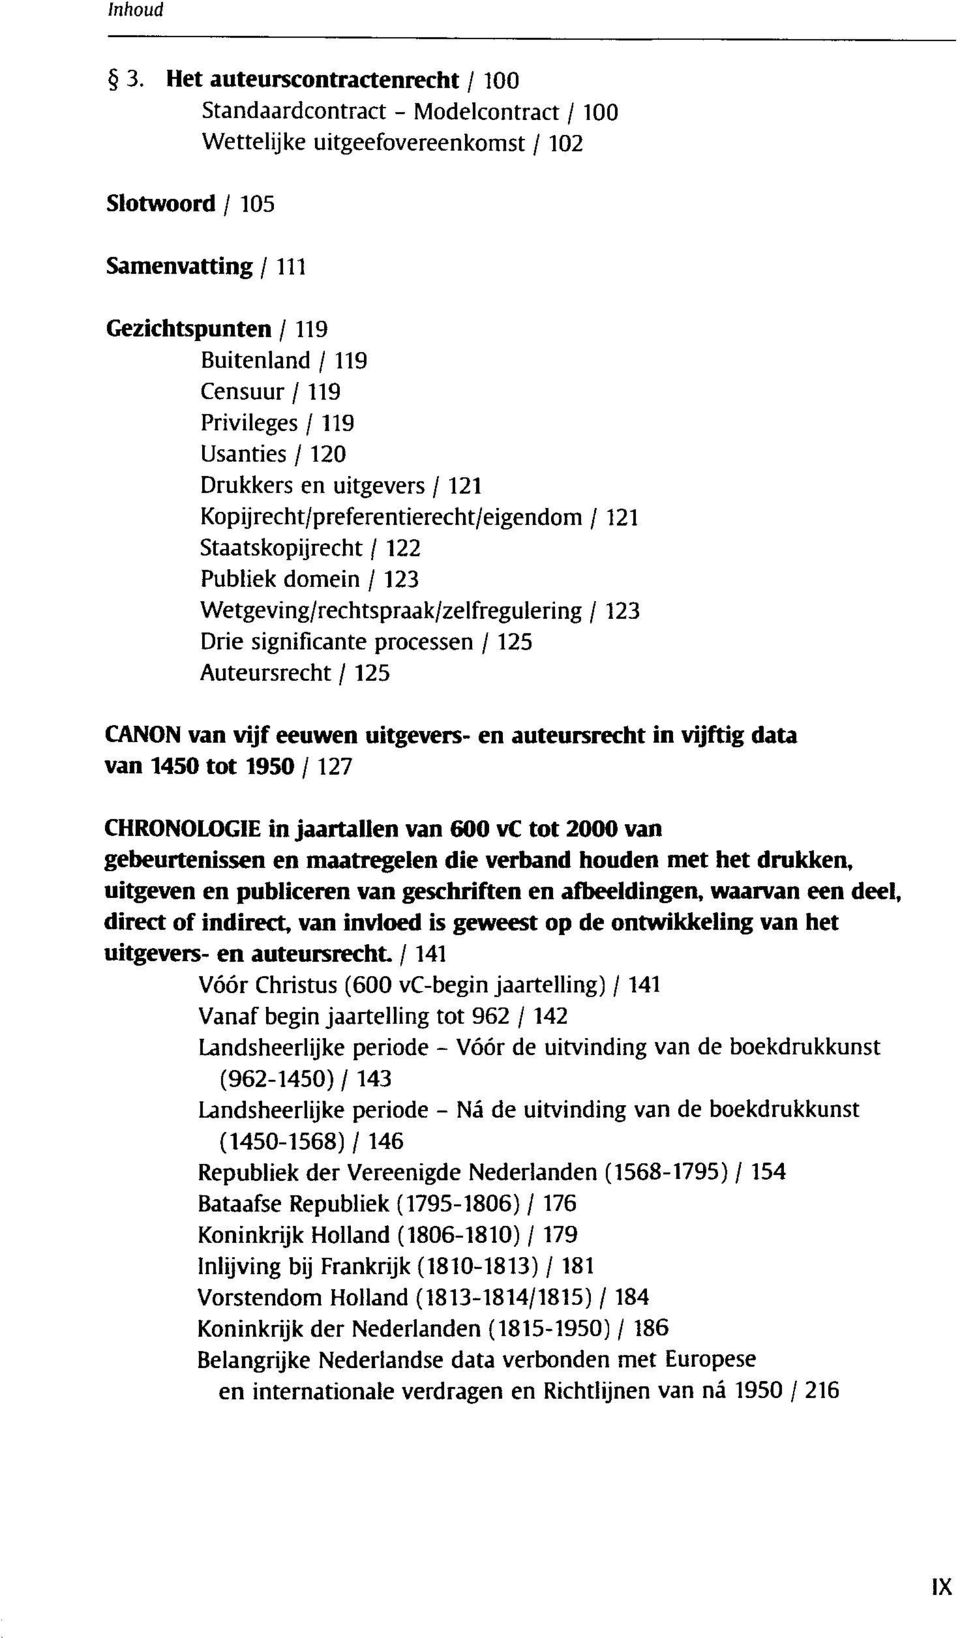 significante processen /125 Auteursrecht / 125 CANON van vijf eeuwen uitgevers- en auteursrecht in vijftig data van 1450 tot 1950/127 CHRONOLOGIE in jaartallen van 600 vc tot 2000 van gebeurtenissen